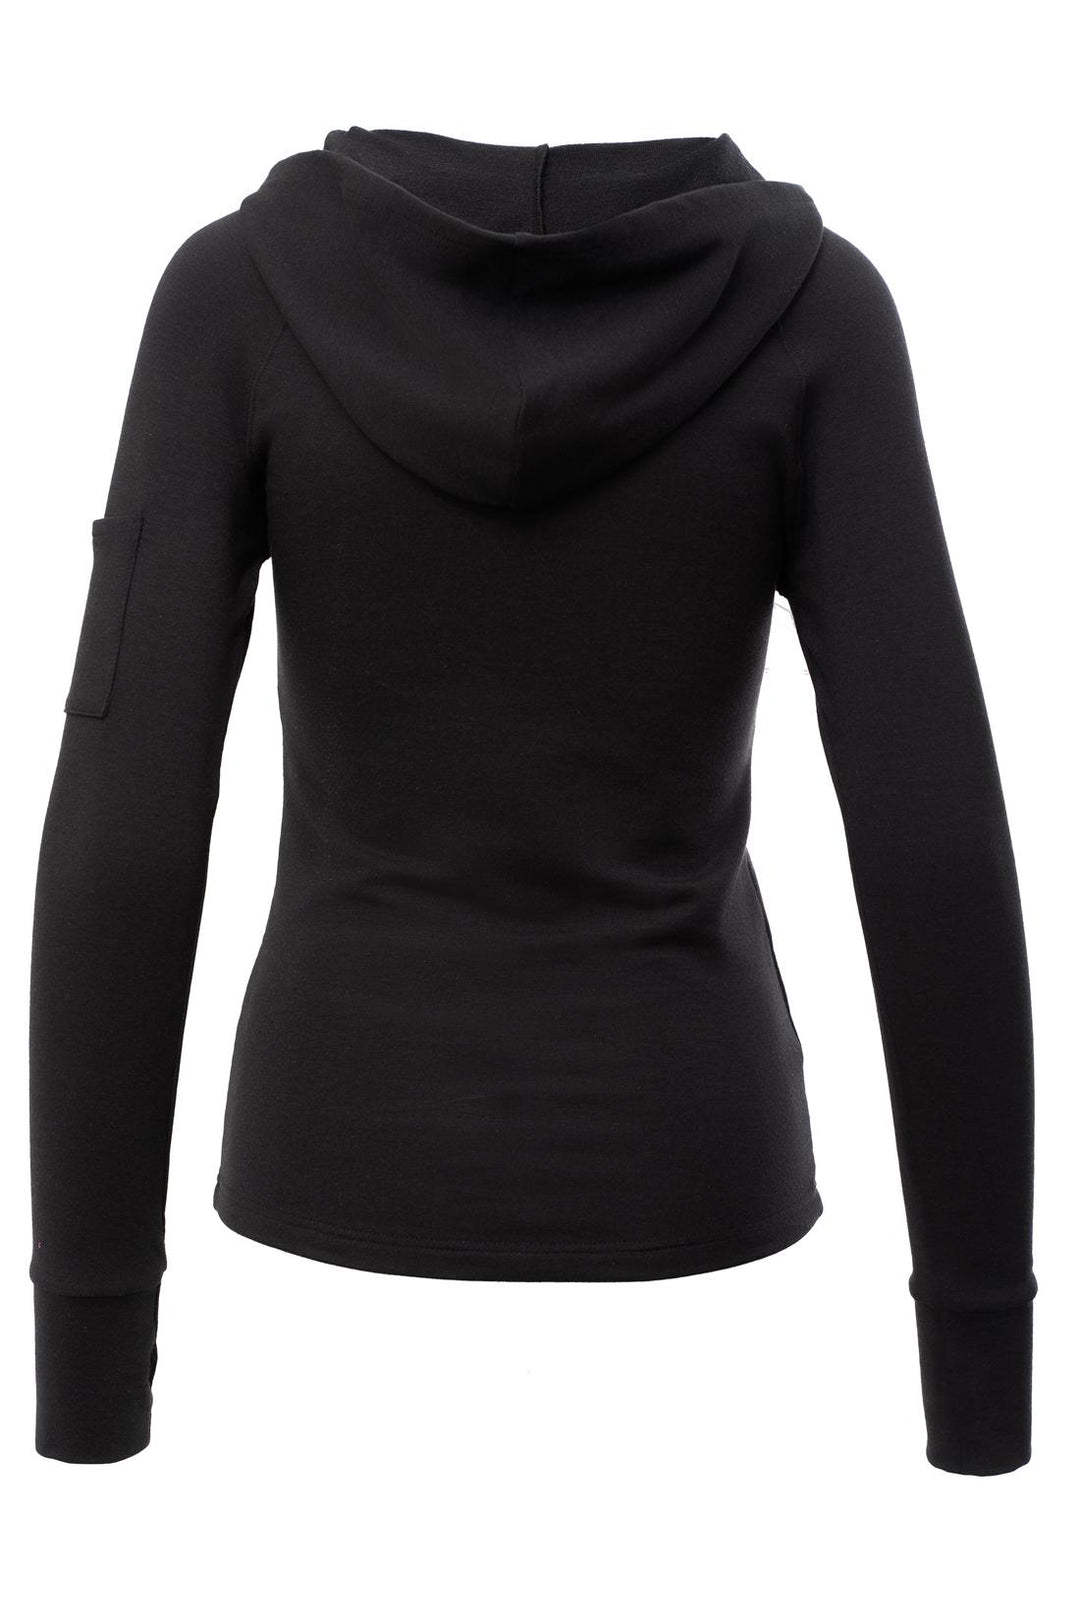 Women's black mid length hoodie